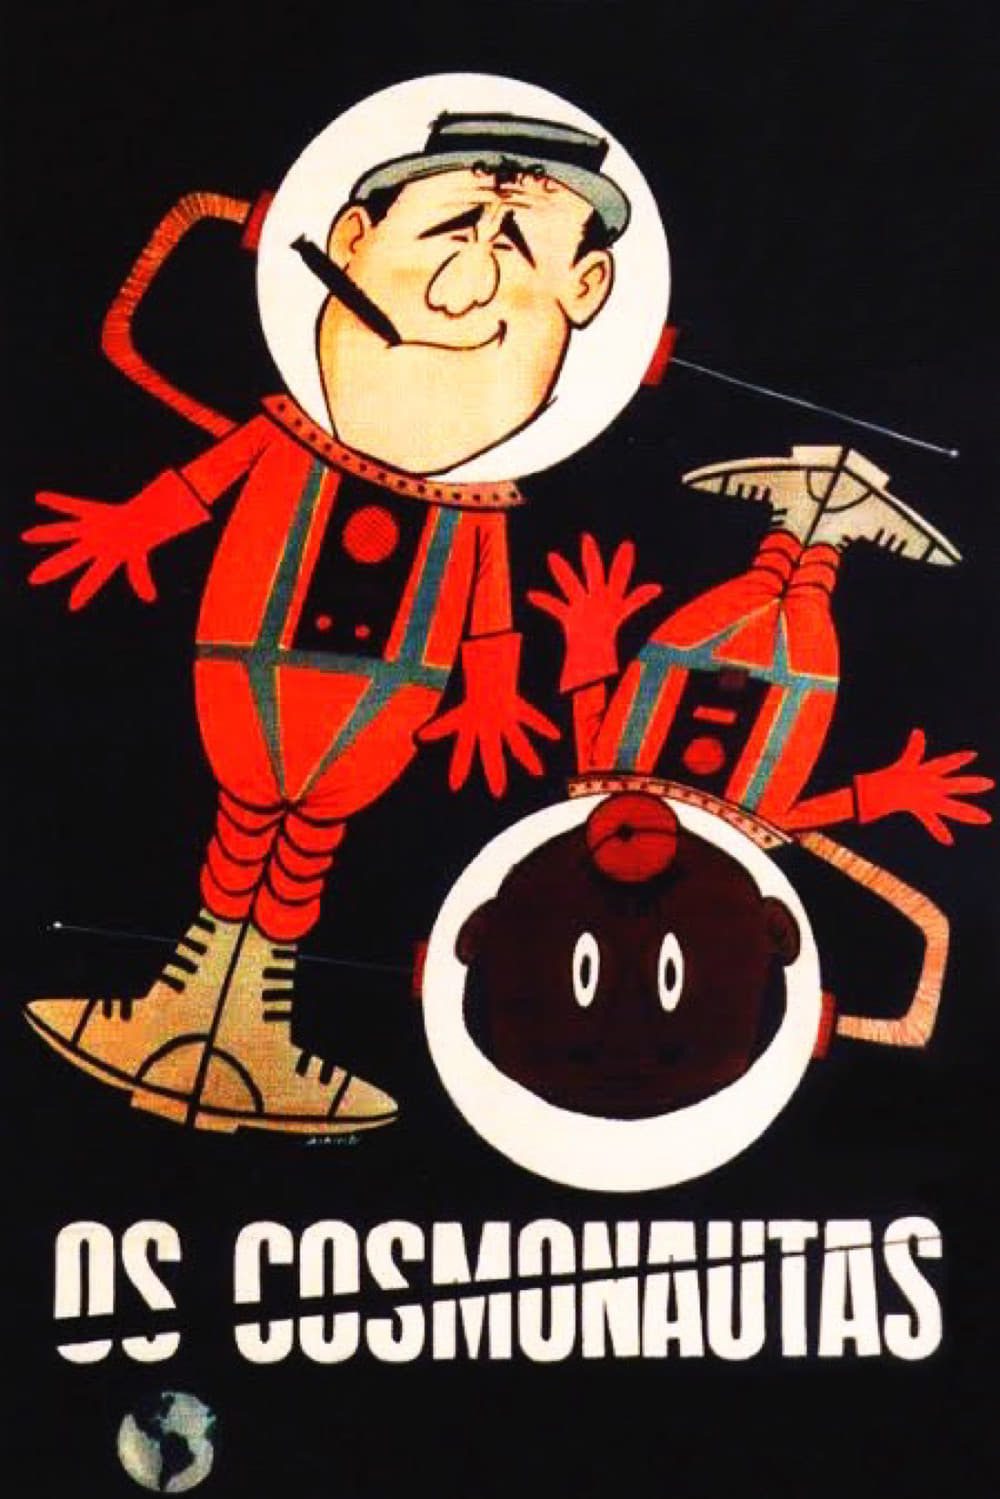 The Cosmonauts